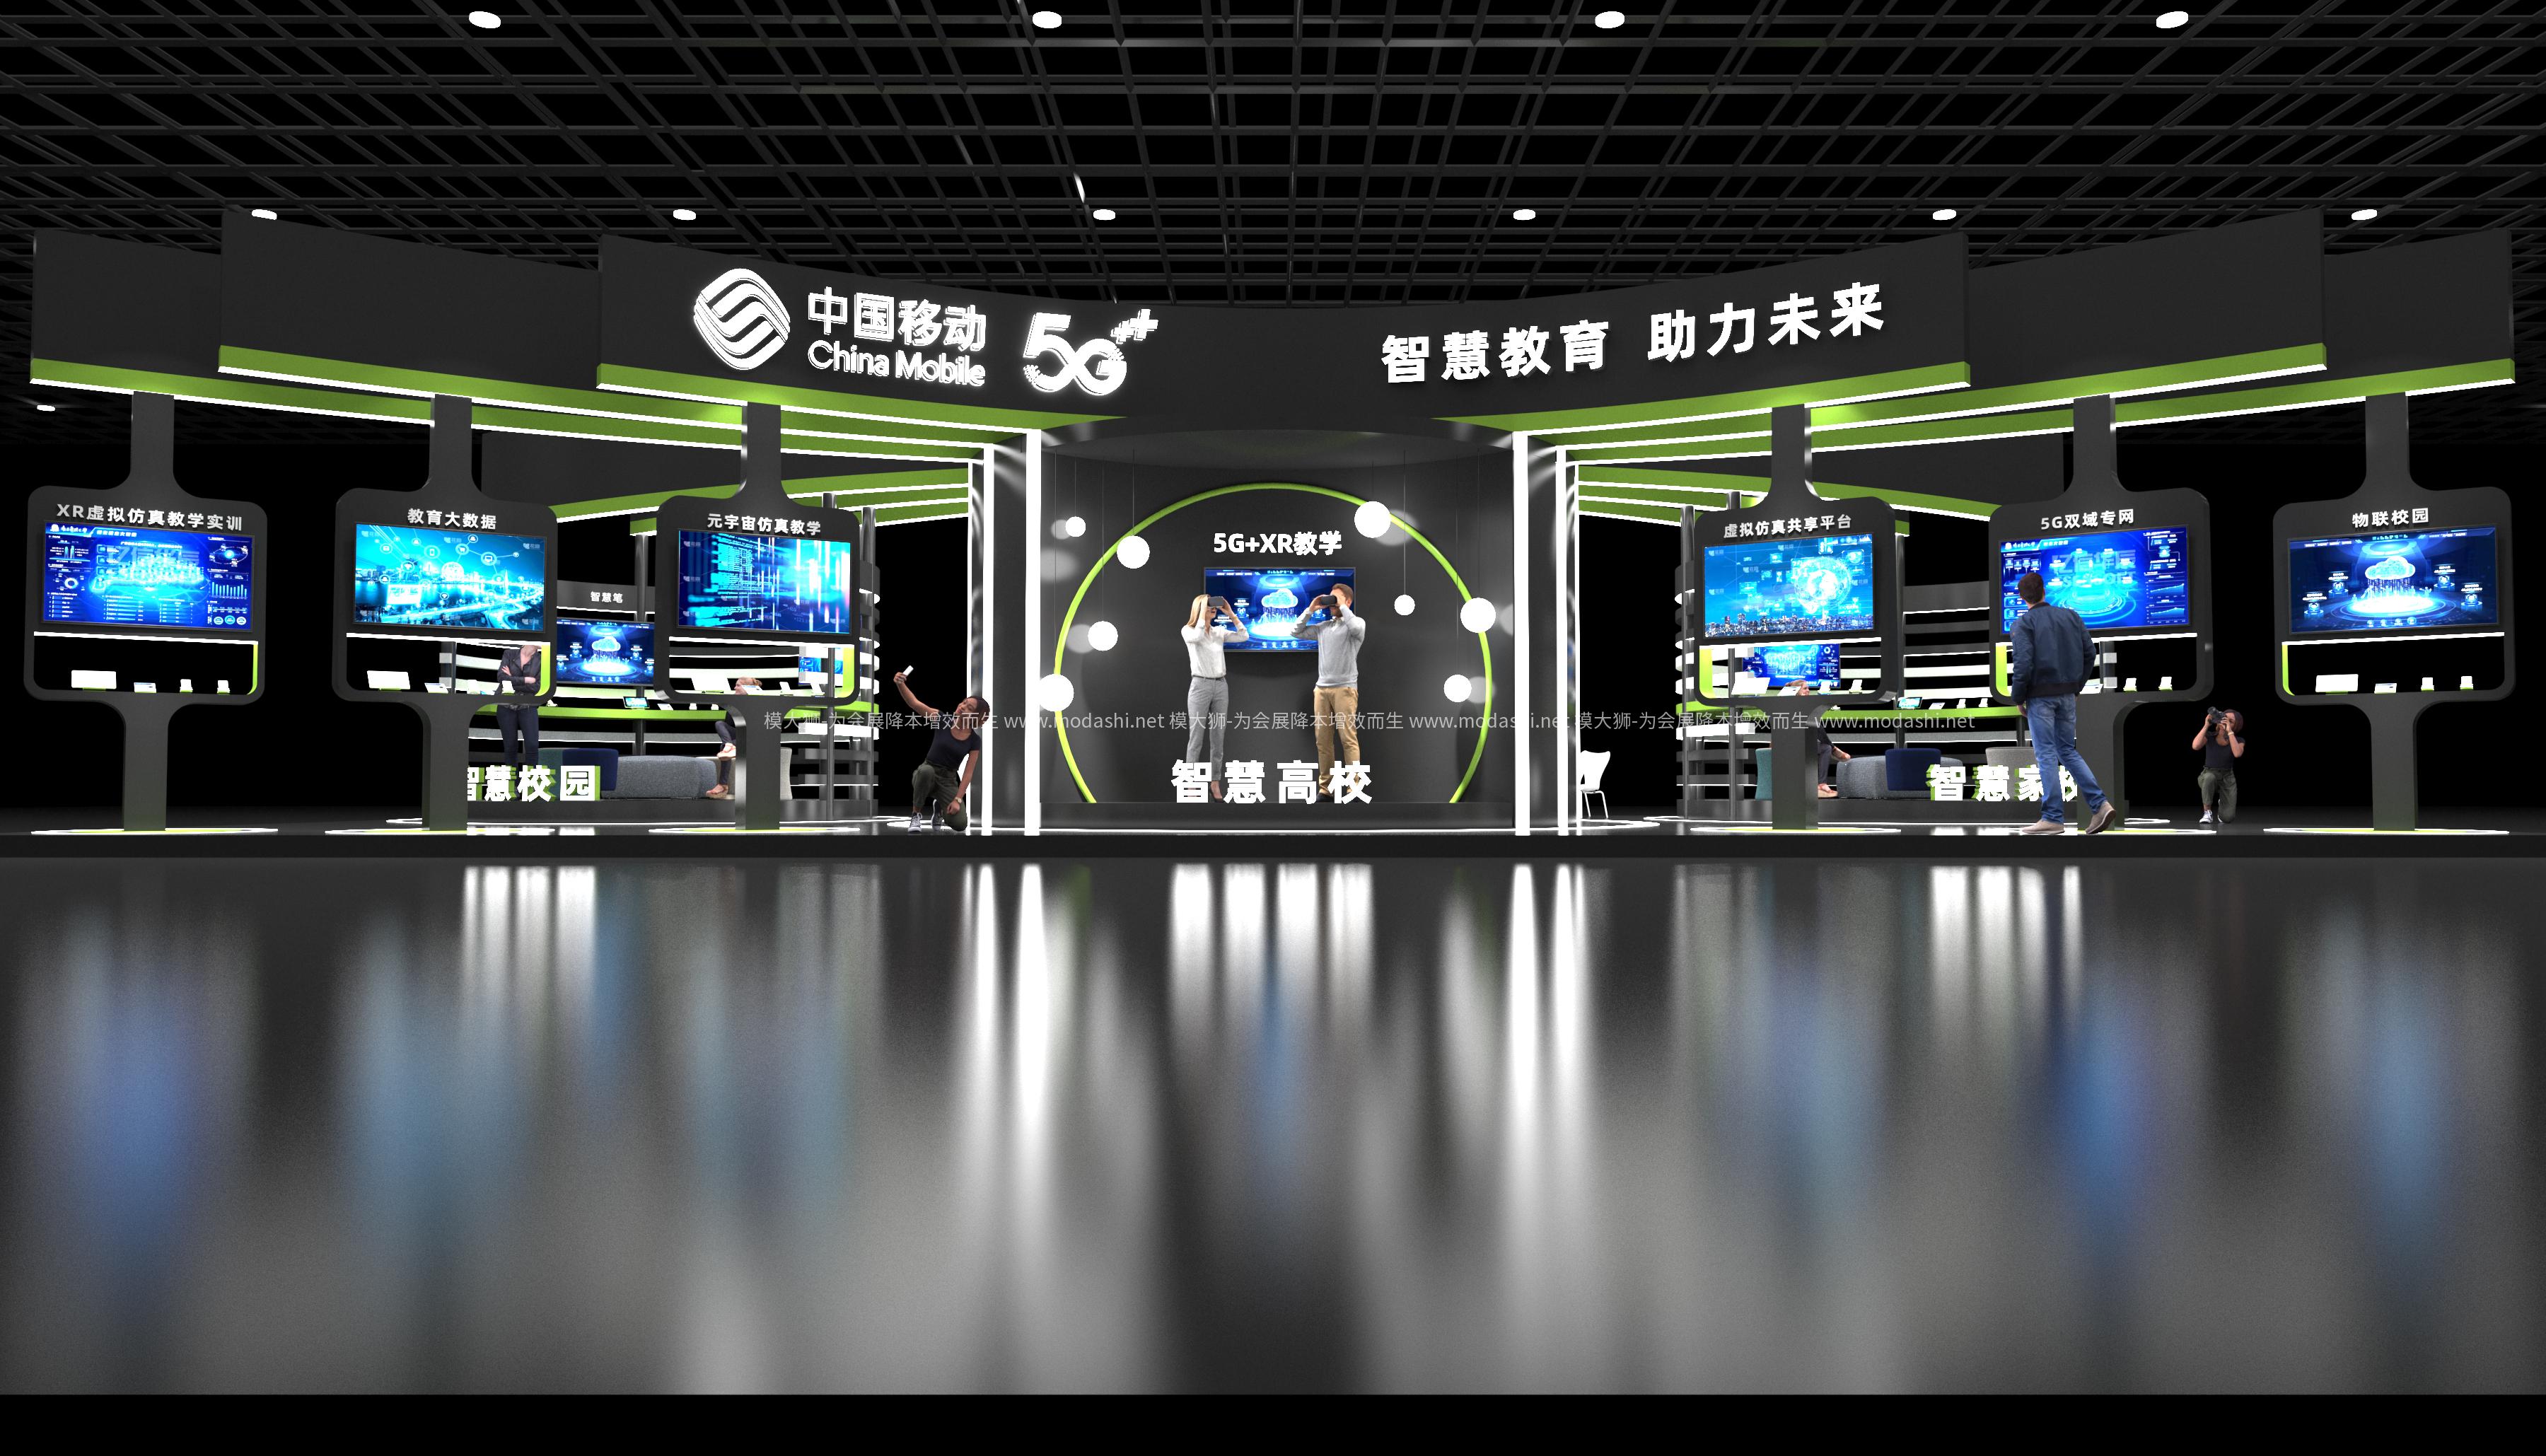 中国移动展示展台3D模型